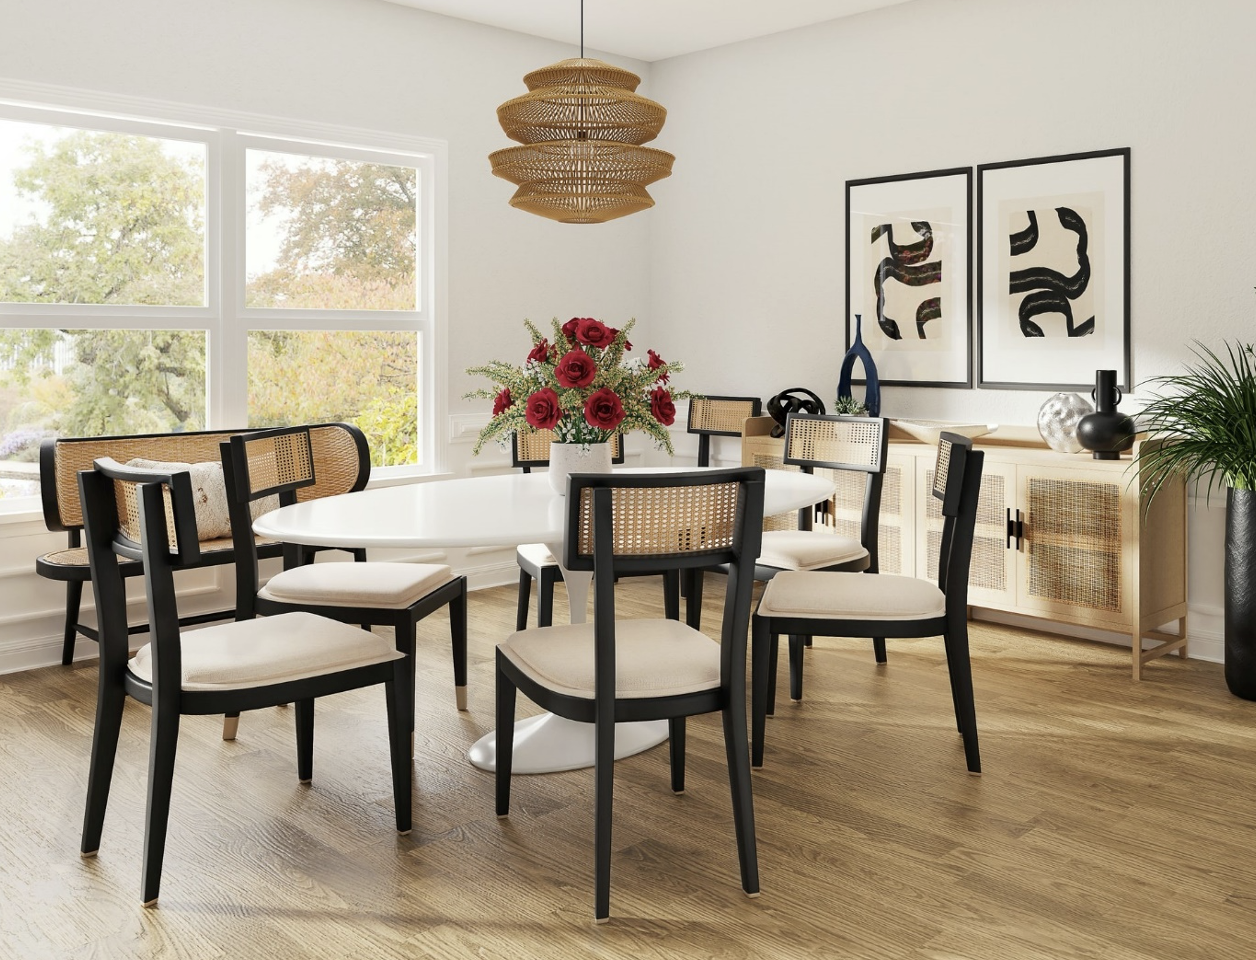 Upgrade jouw eetkamer met deze eetkamerstoelen